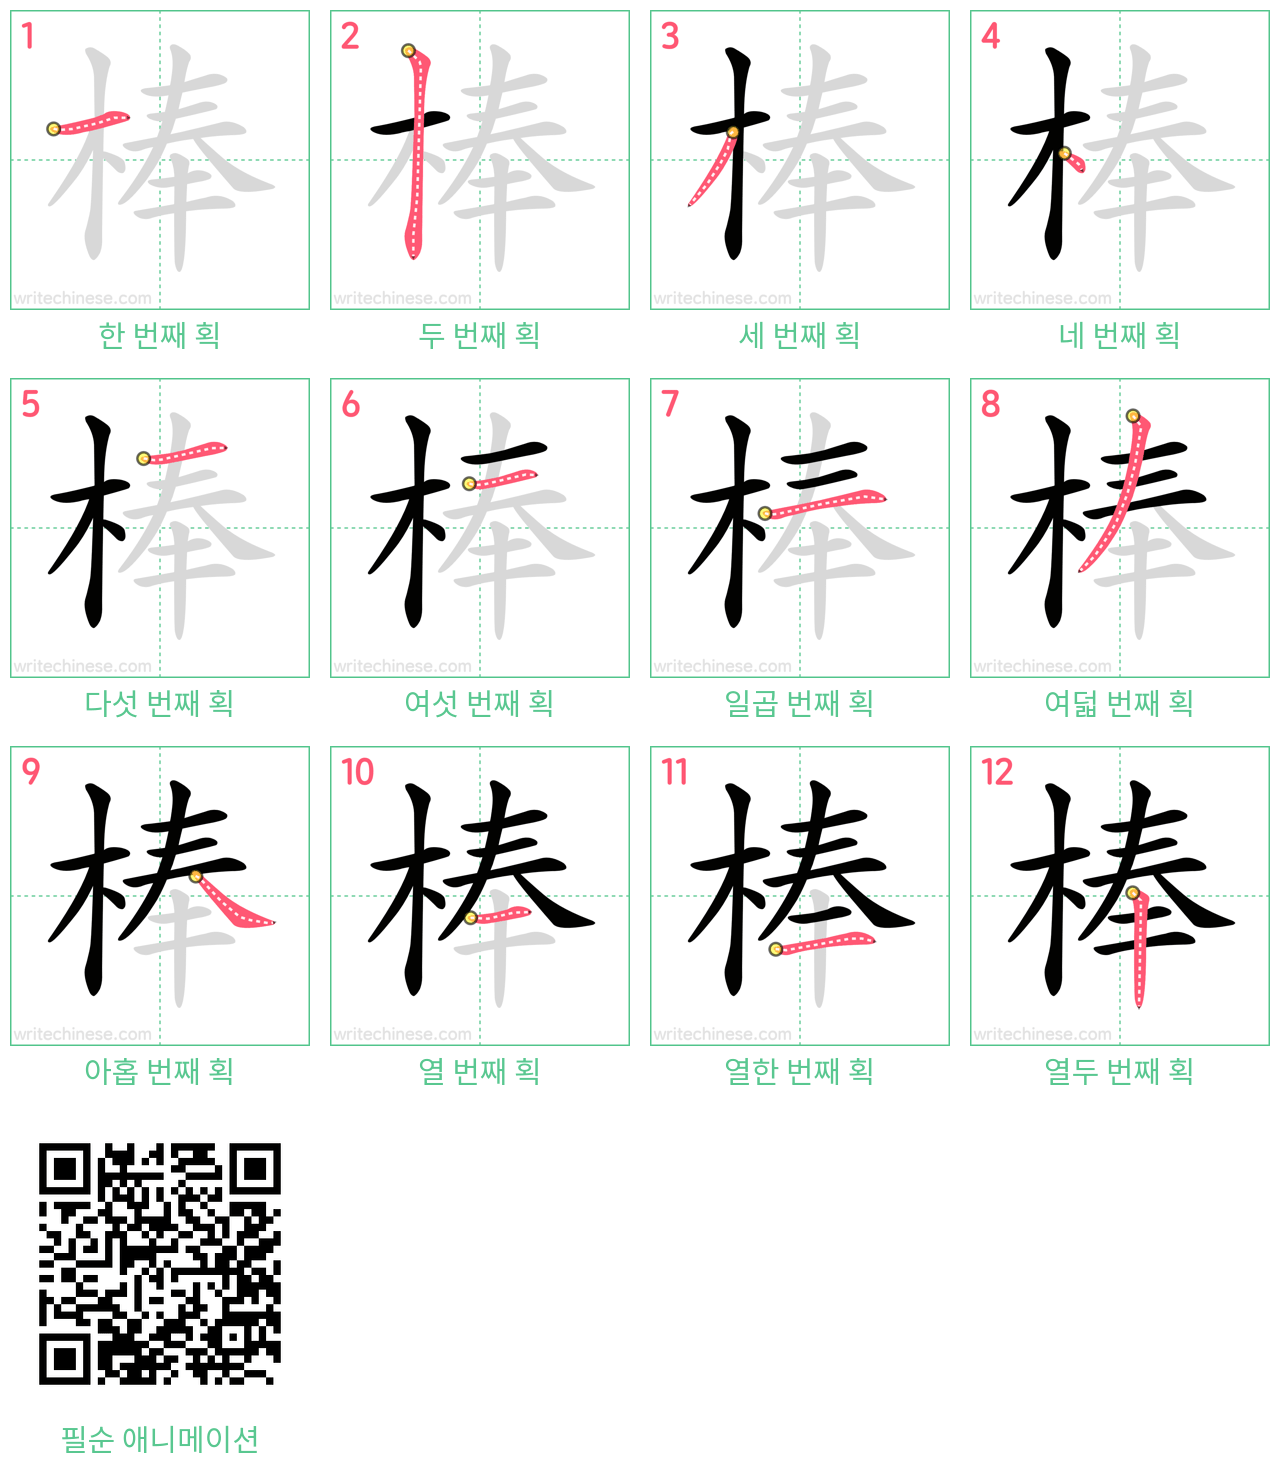 棒 step-by-step stroke order diagrams